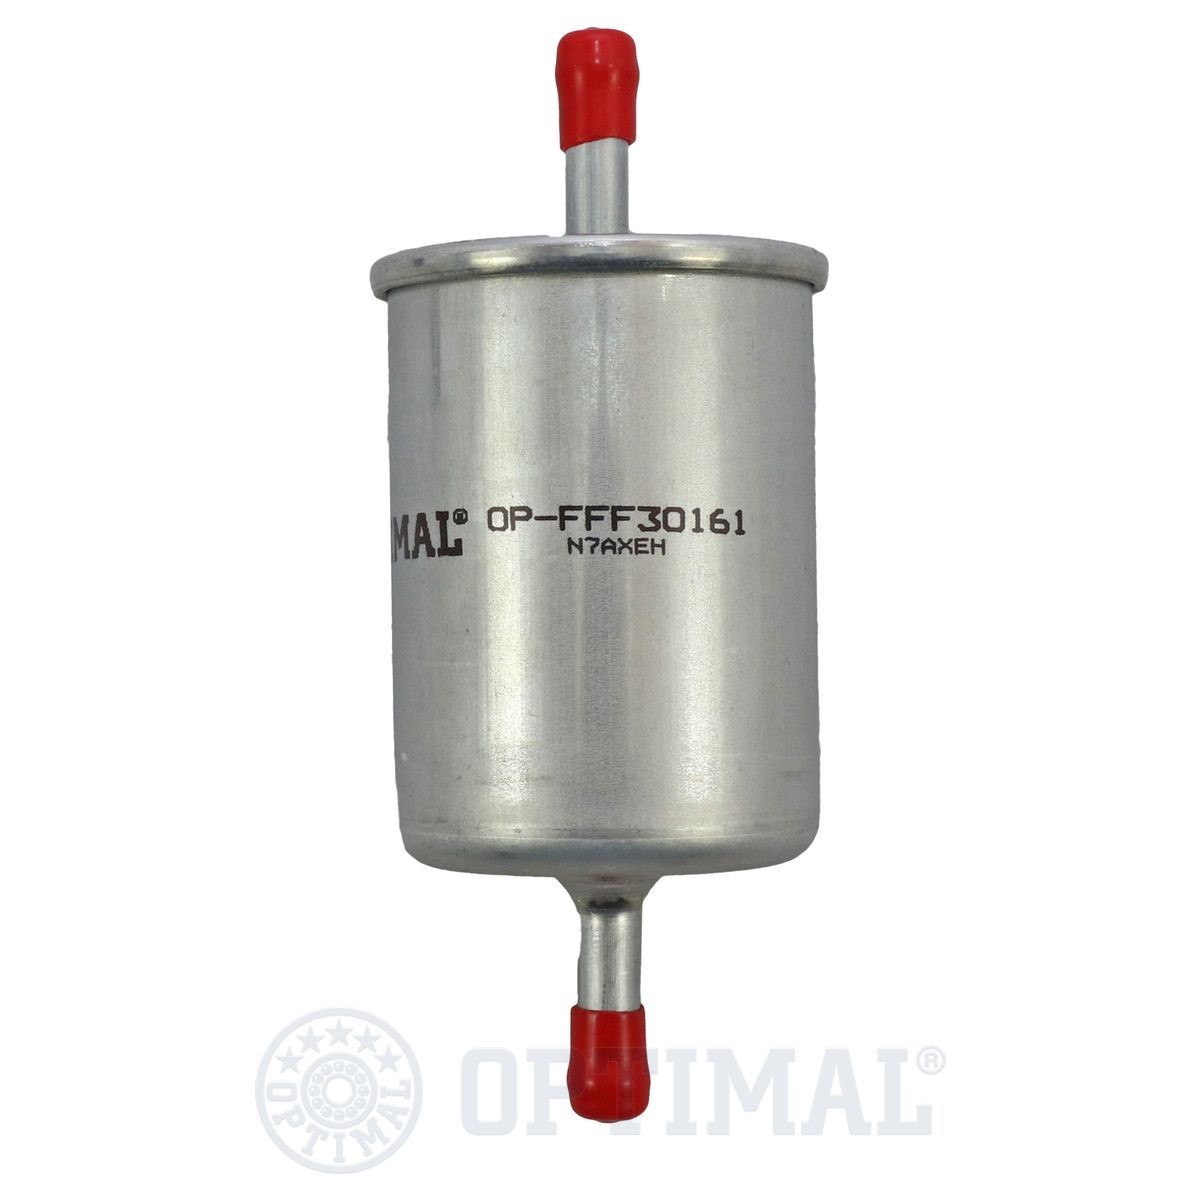 OPTIMAL OP-FFF30161 Fuel filter 004 312 114